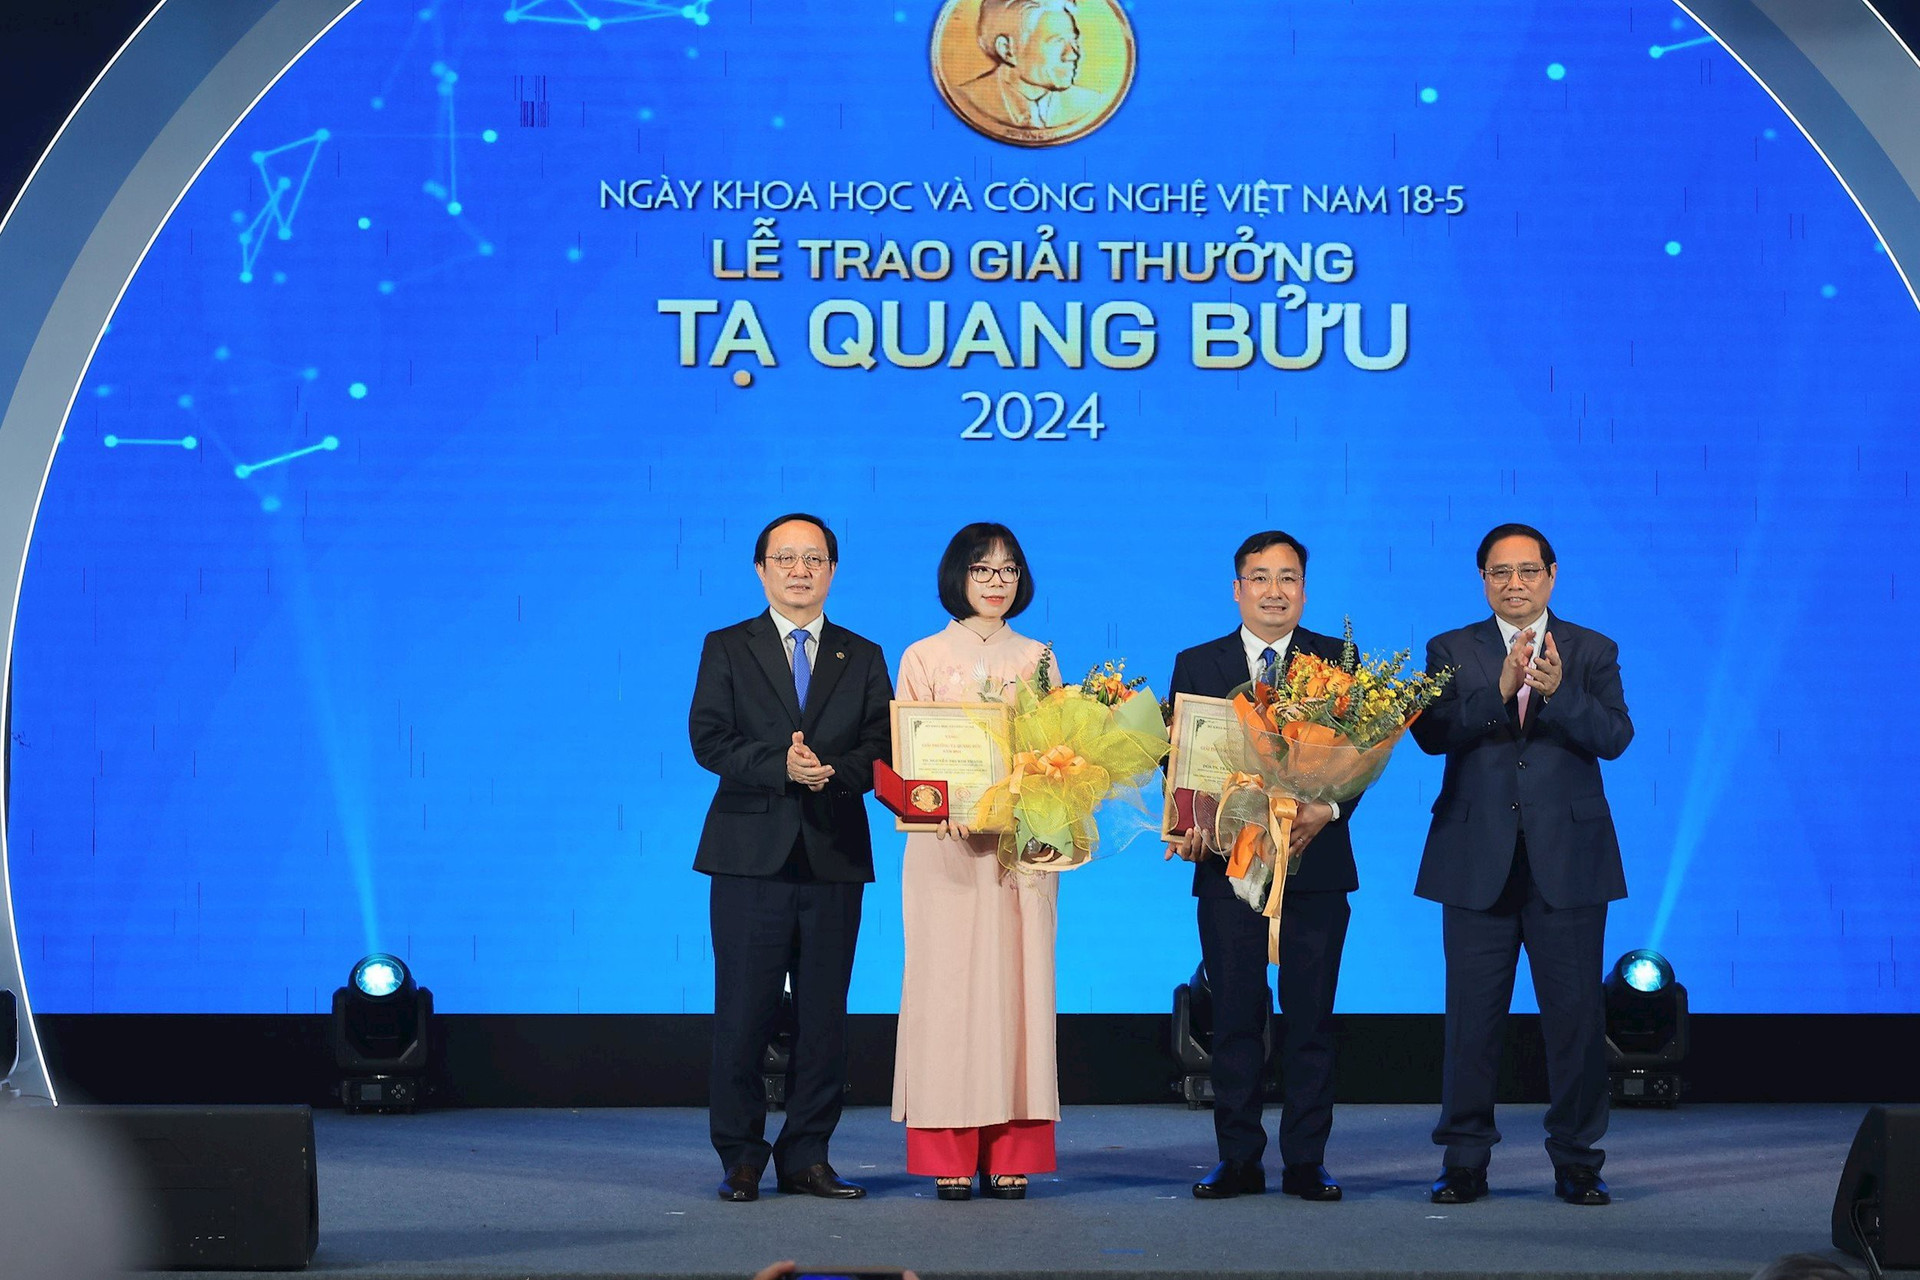 Giải thưởng Tạ Quang Bửu 2024 vinh danh 2 nhà khoa học lĩnh vực vật lý và môi trường